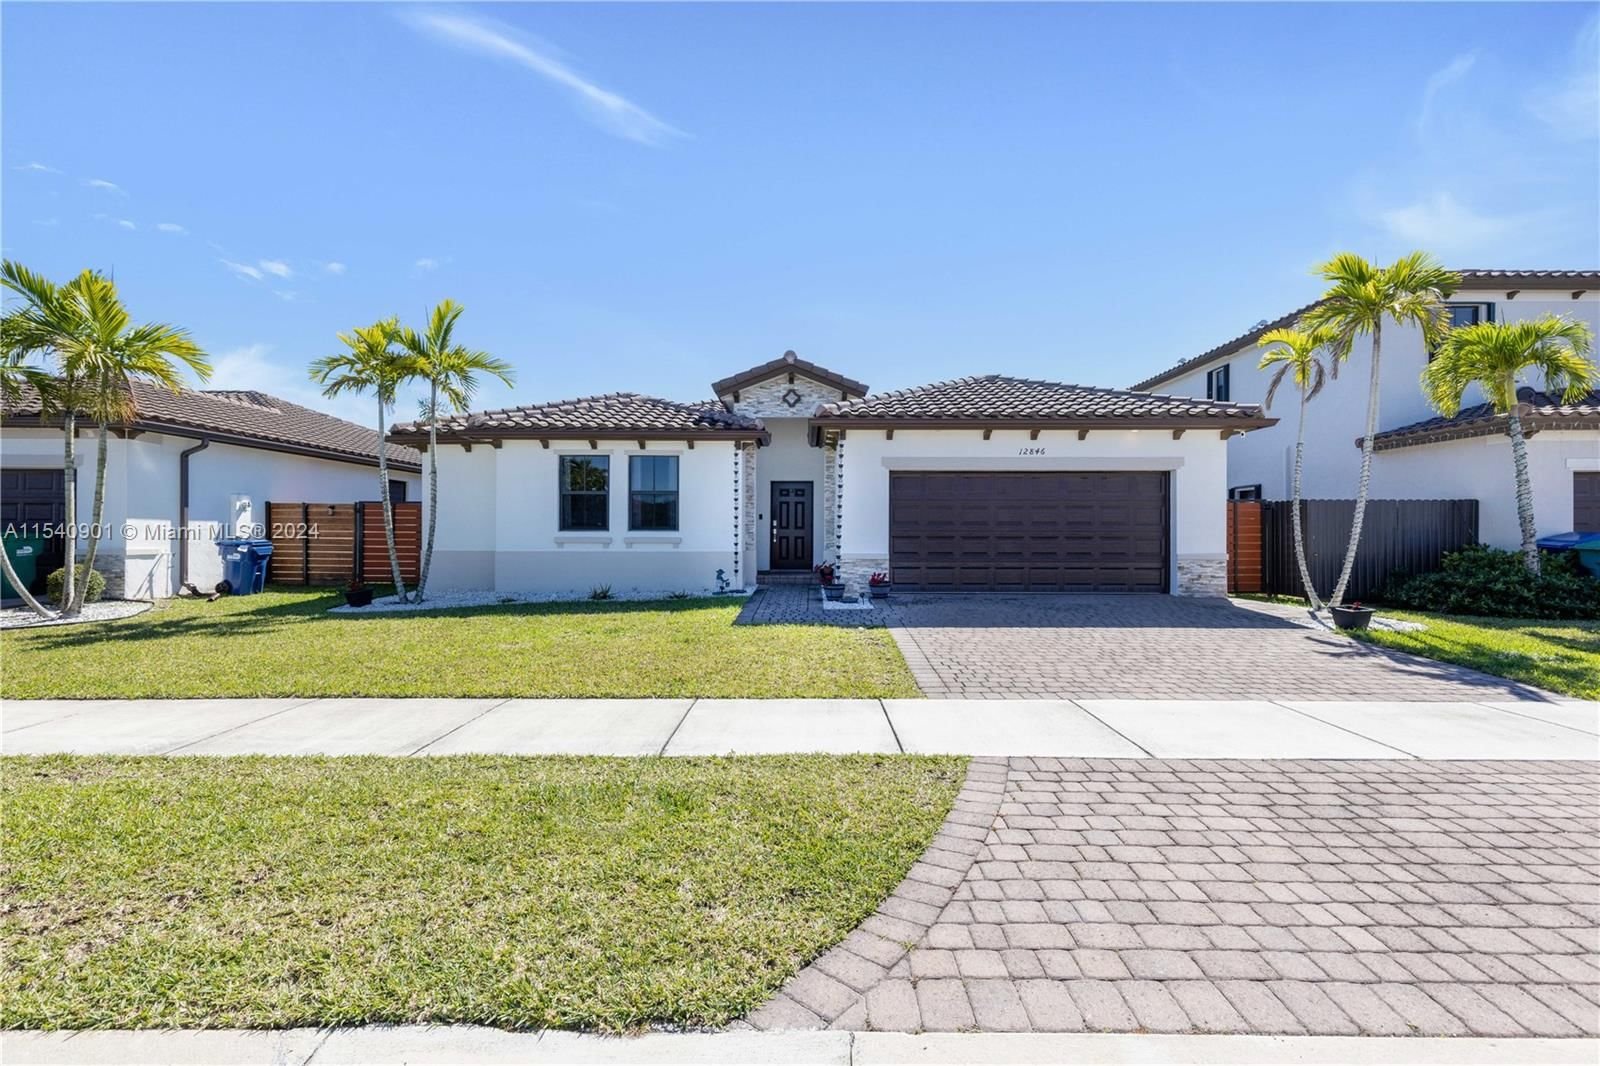 Real estate property located at 12846 229th St, Miami-Dade County, HERRAN-BARKETT SUBDIVISIO, Miami, FL